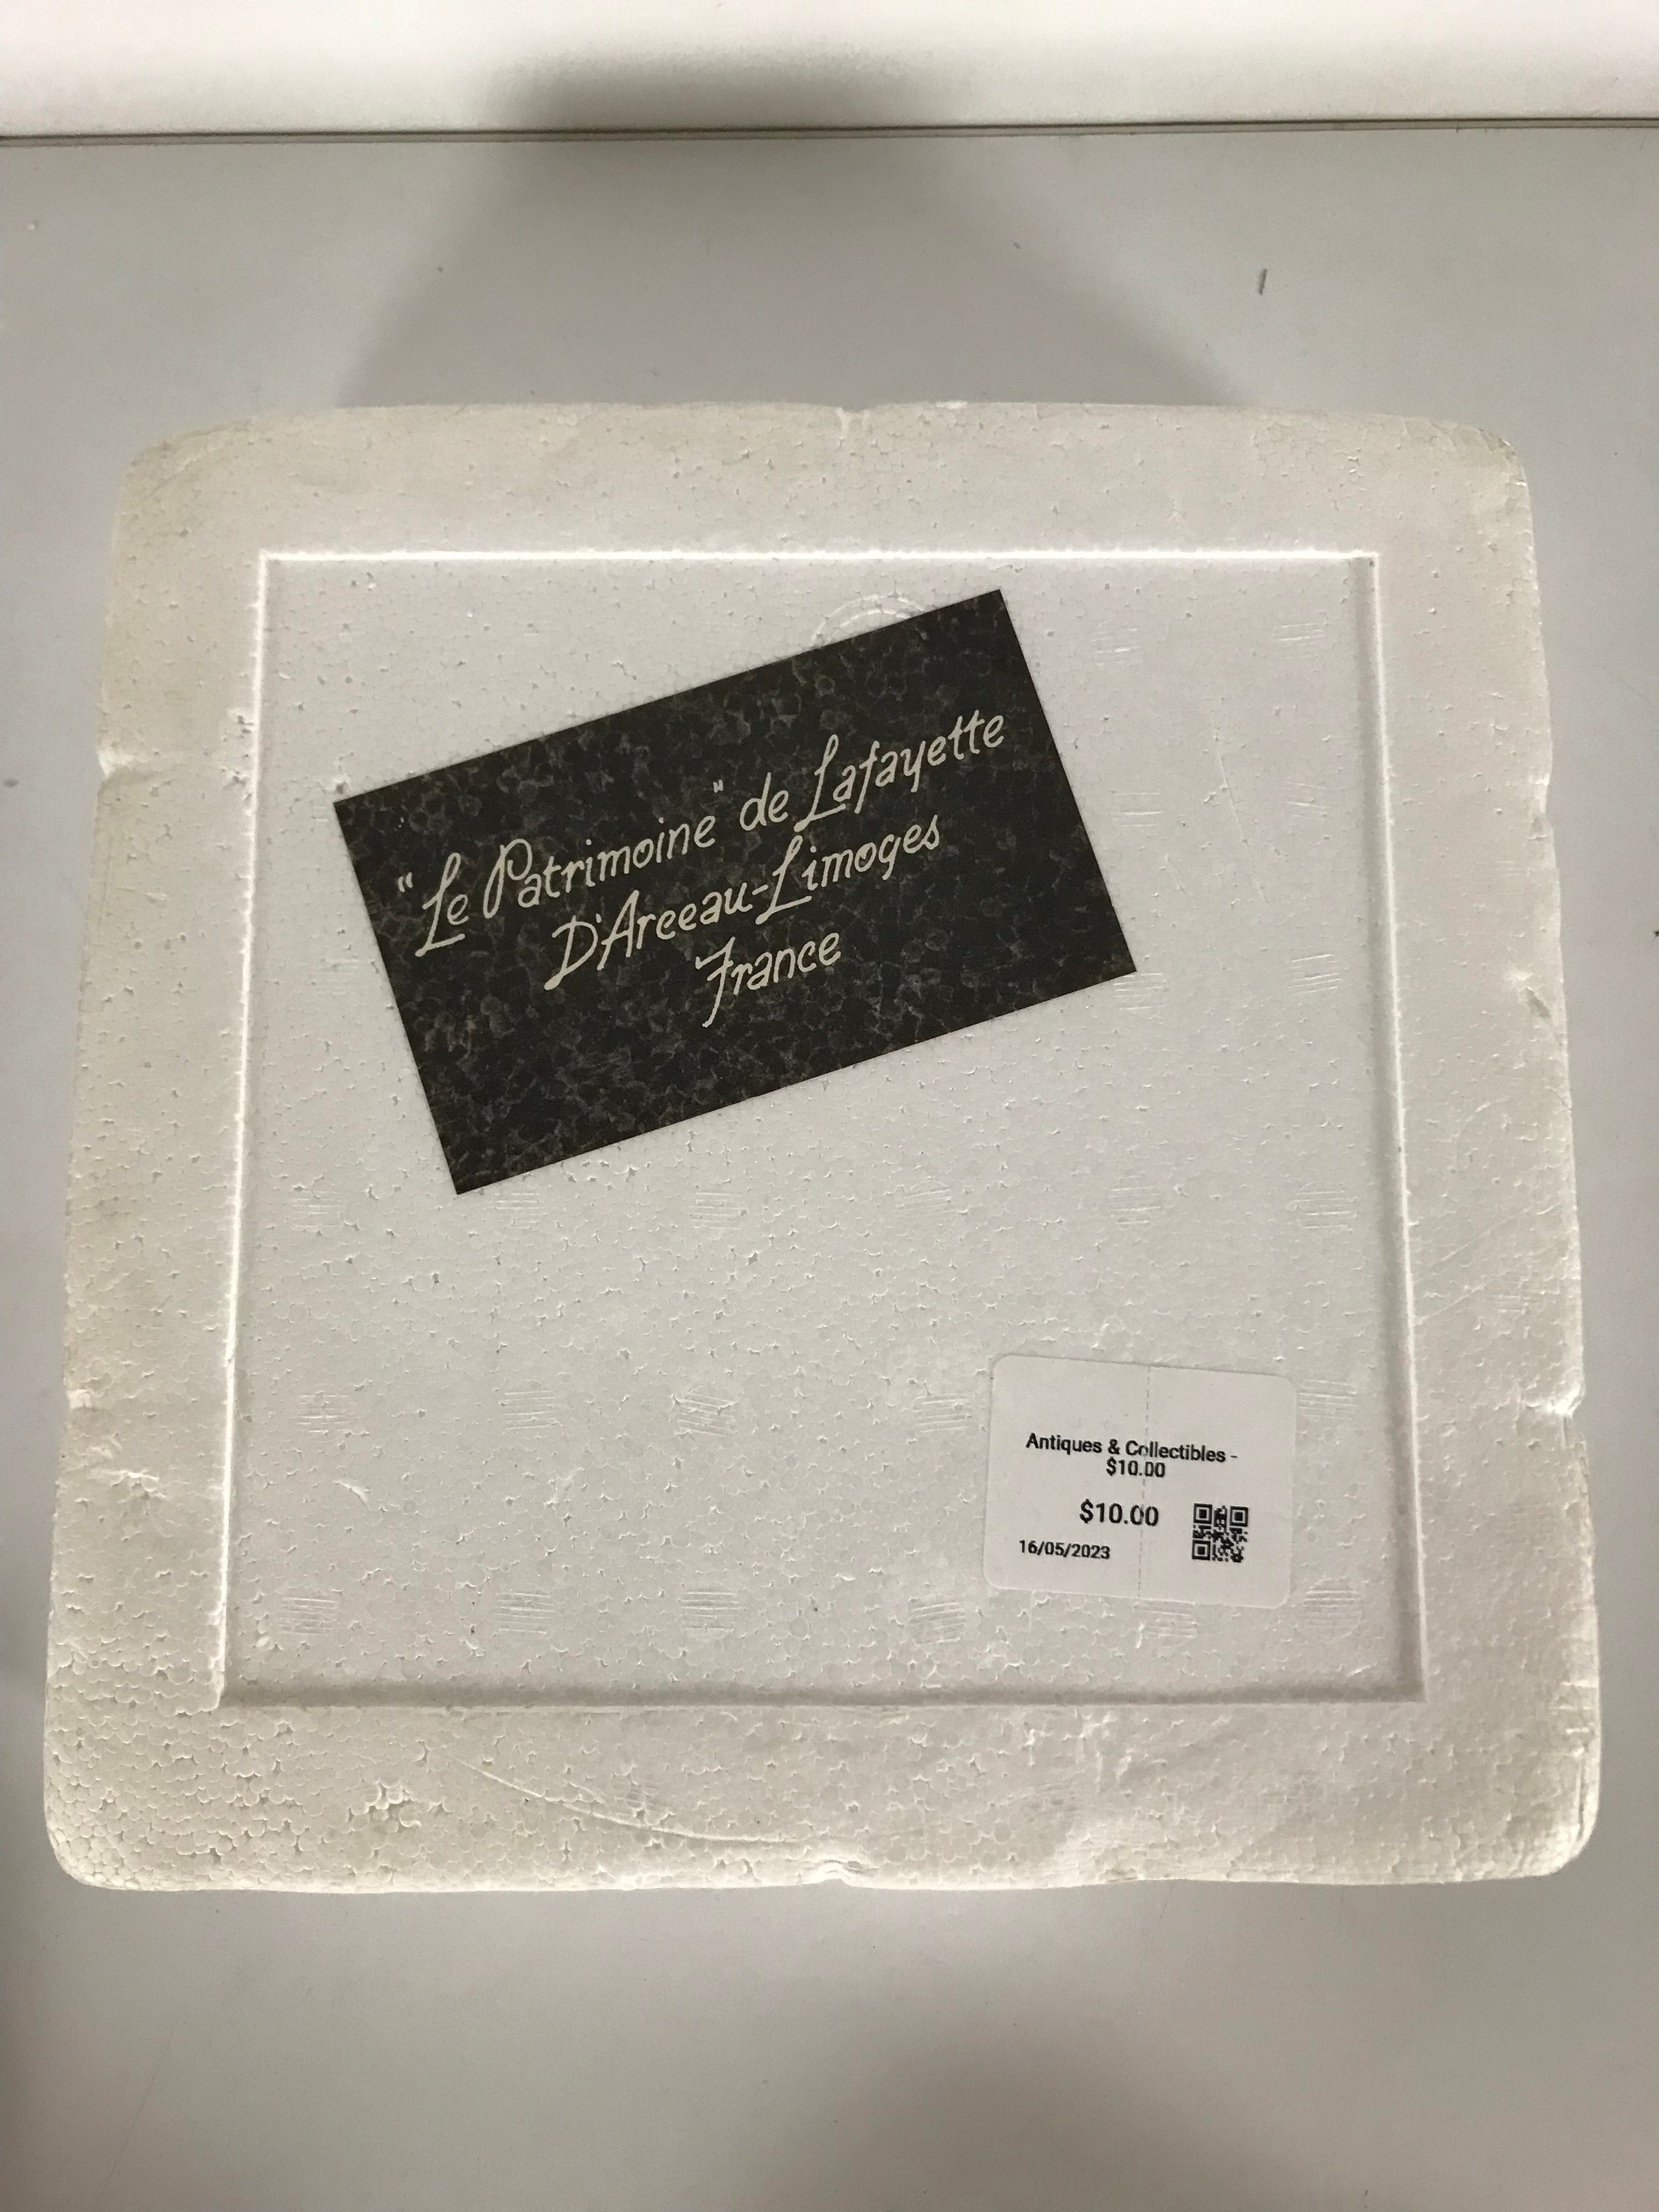 Henri D'Arceau-Limoges "'Le Patrimoine' de Lafayette" Plate